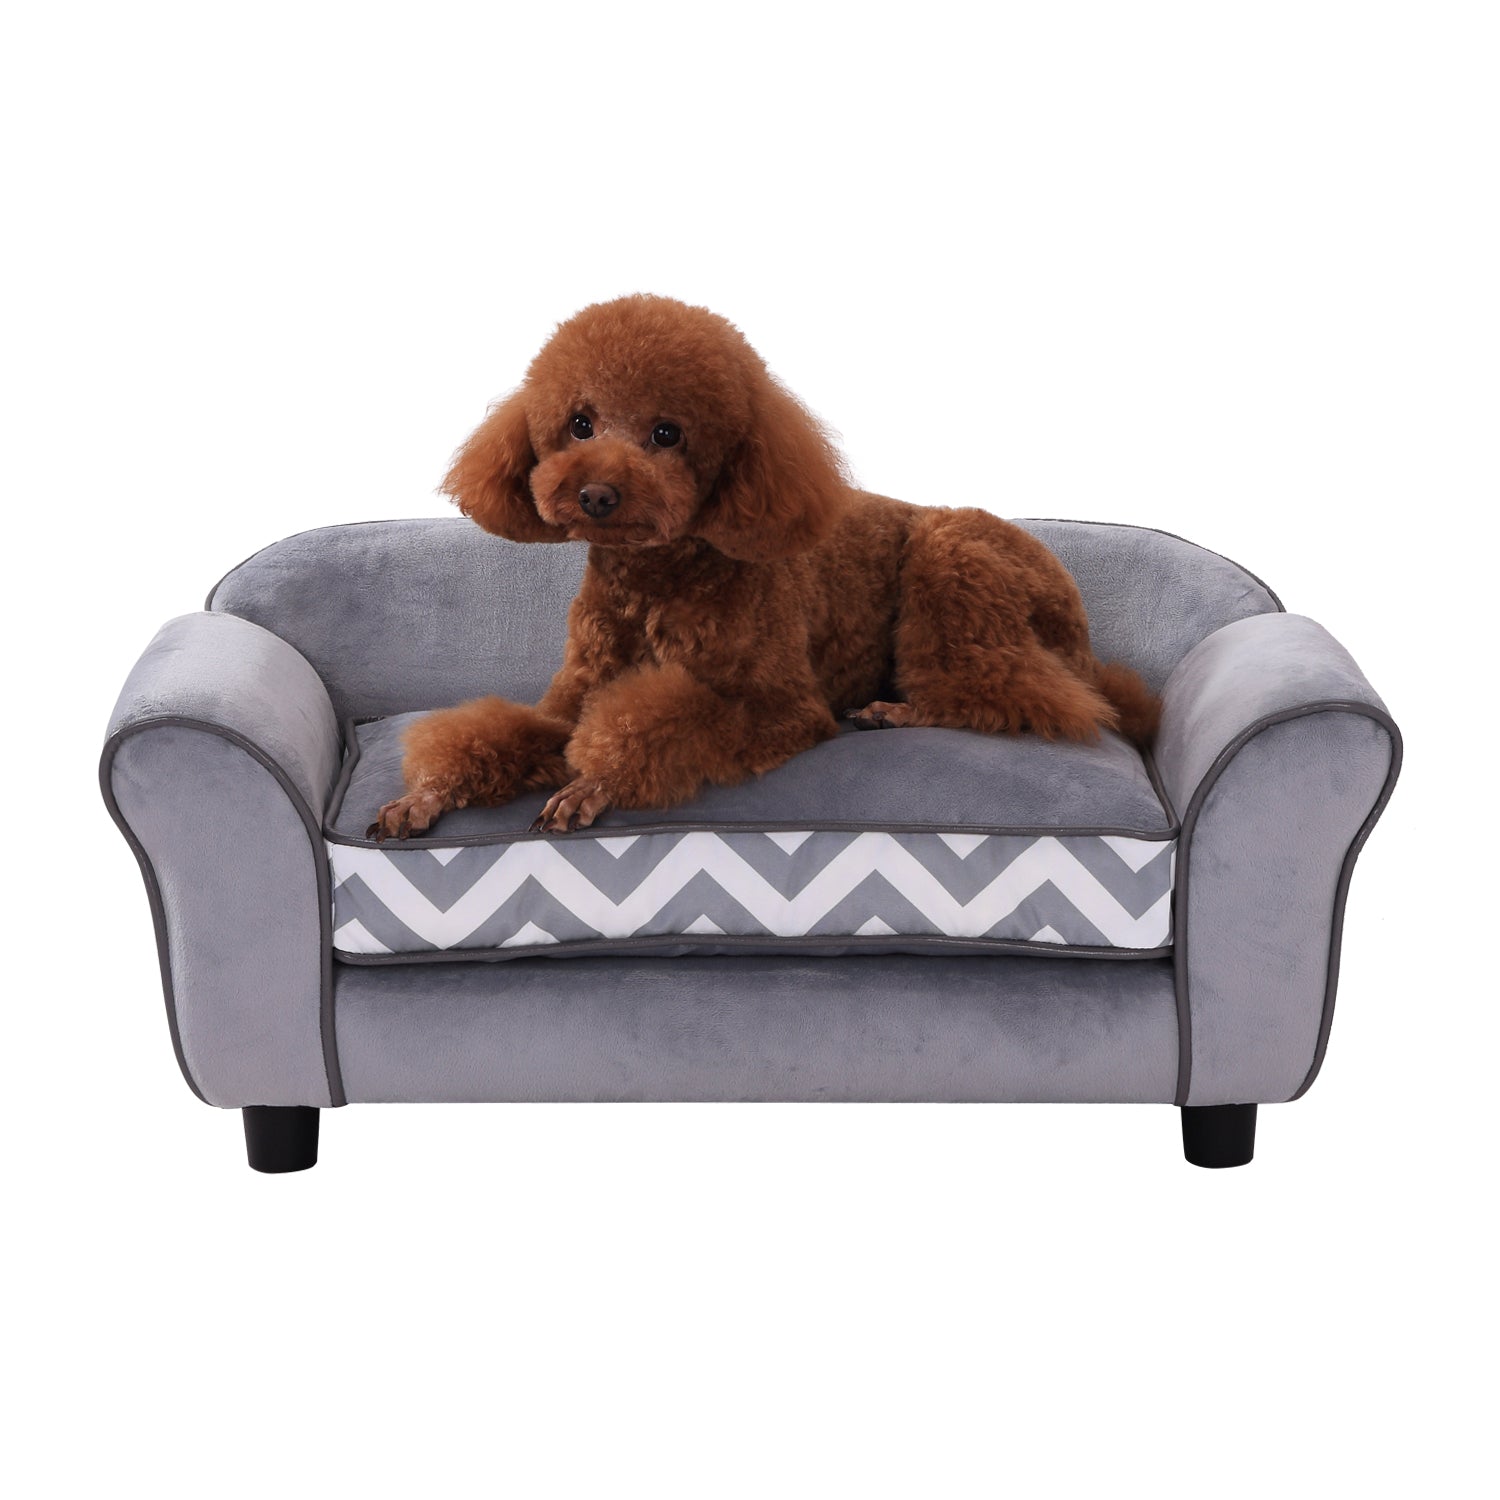 73.5Lx41Wx33H cm Pet Sofa-Grey